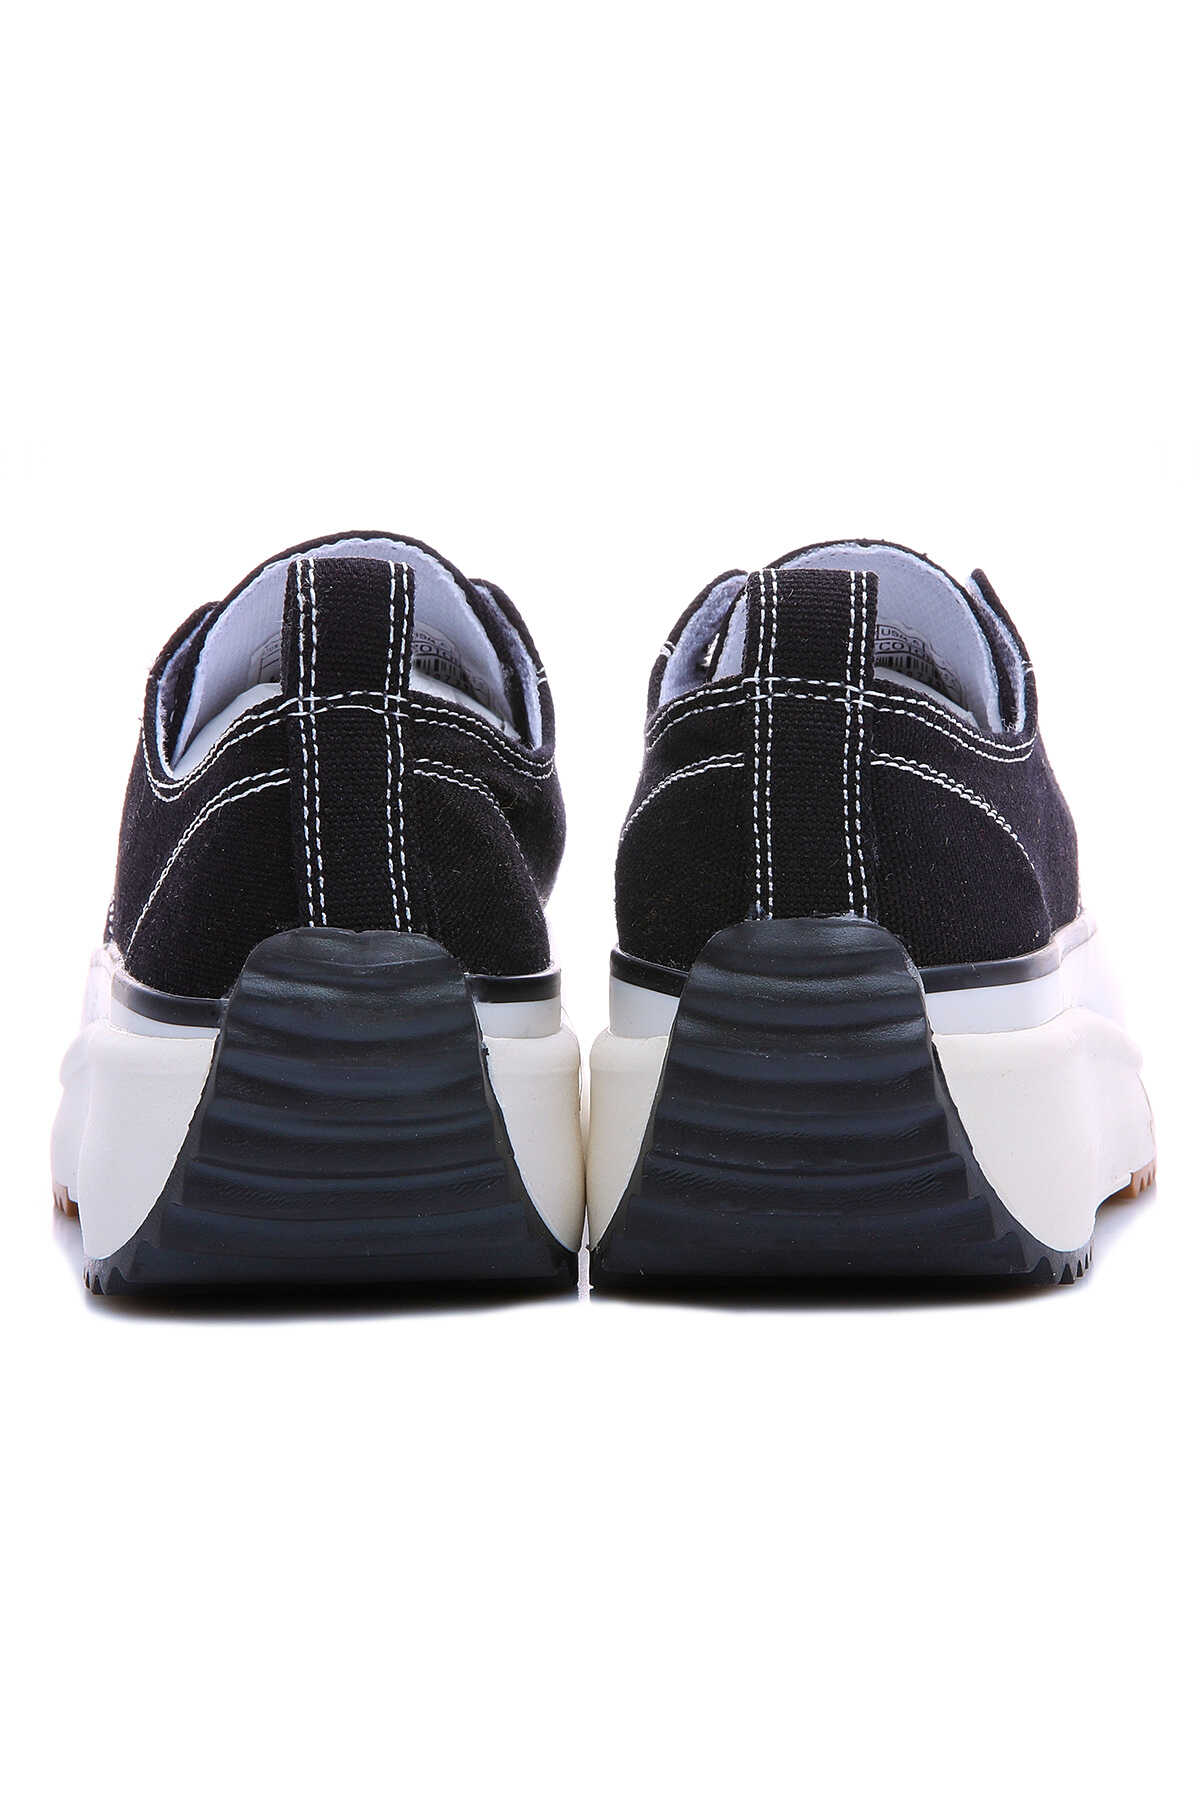 Siyah-Beyaz Kadın Bağcıklı Yüksek Taban Günlük Spor Ayakkabı-89070